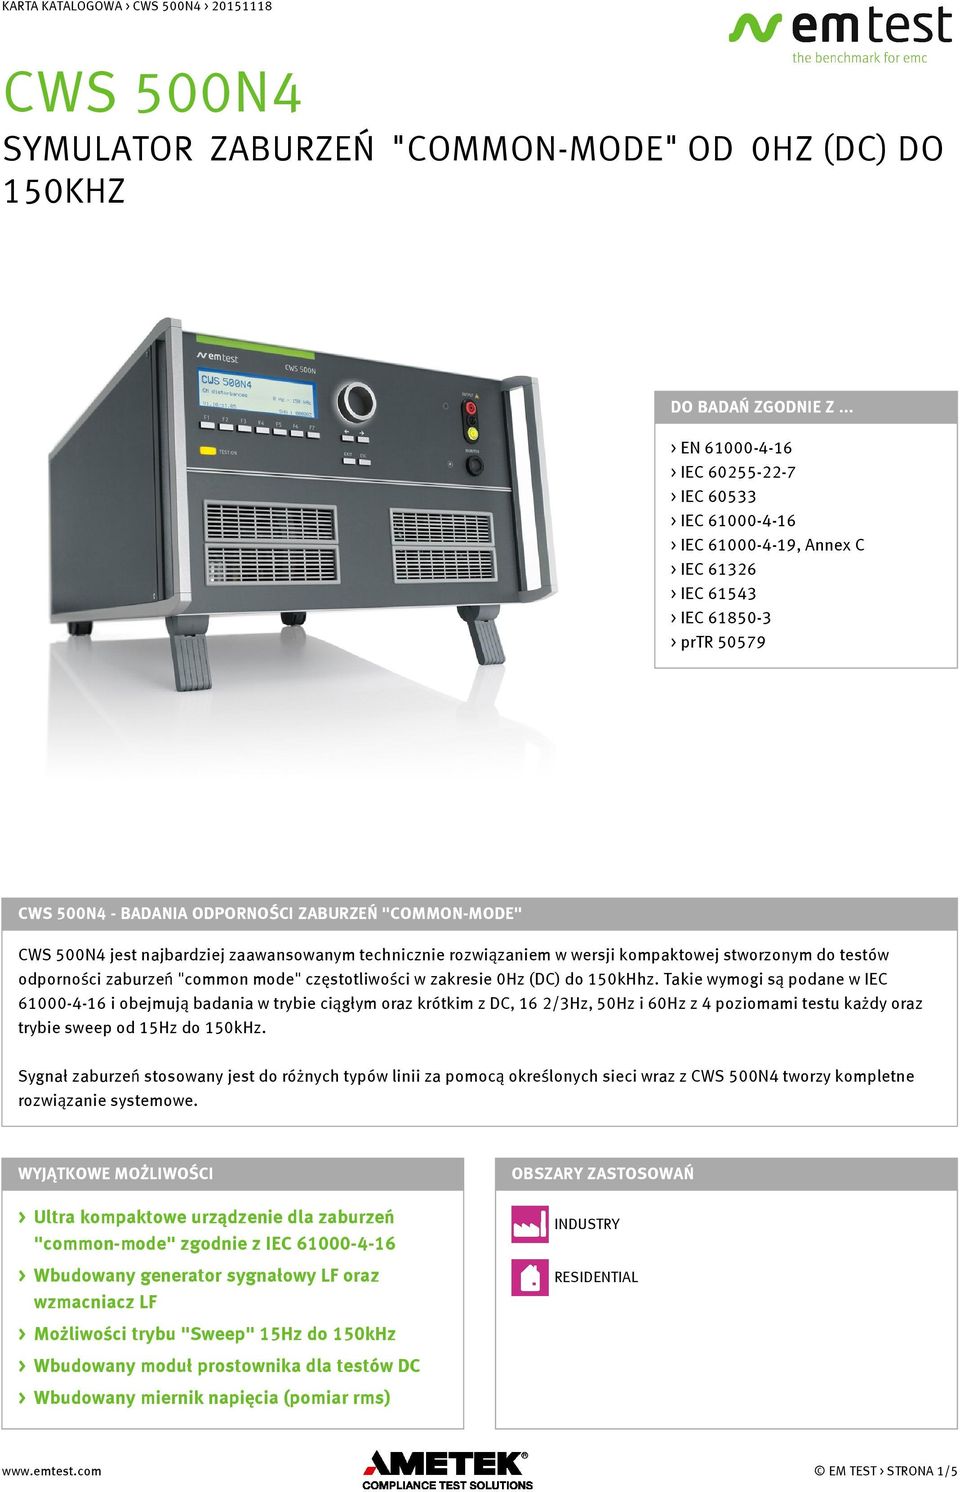 500N4 jest najbardziej zaawansowanym technicznie rozwiązaniem w wersji kompaktowej stworzonym do testów odporności zaburzeń "common mode" częstotliwości w zakresie 0Hz (DC) do 150kHhz.